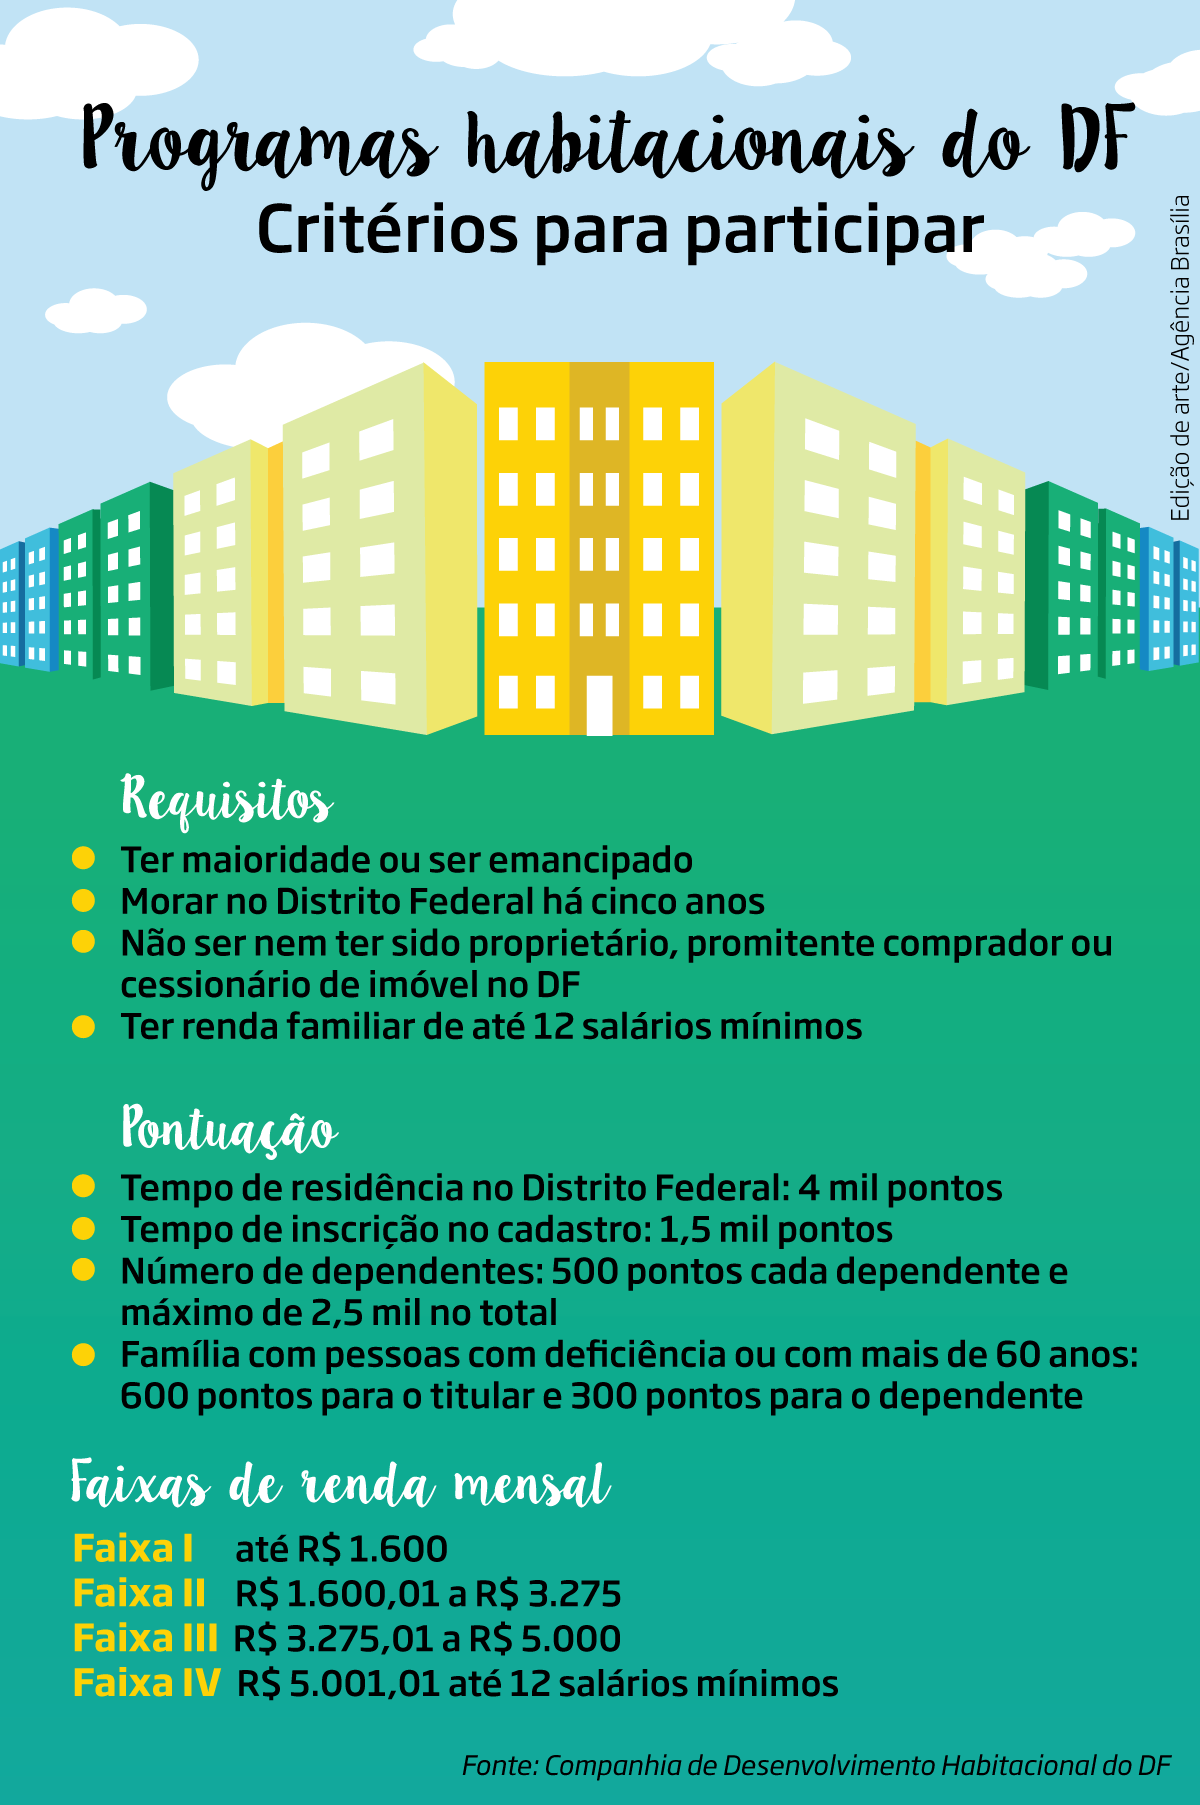 Critérios para participar de programas habitacionais no Distrito Federal